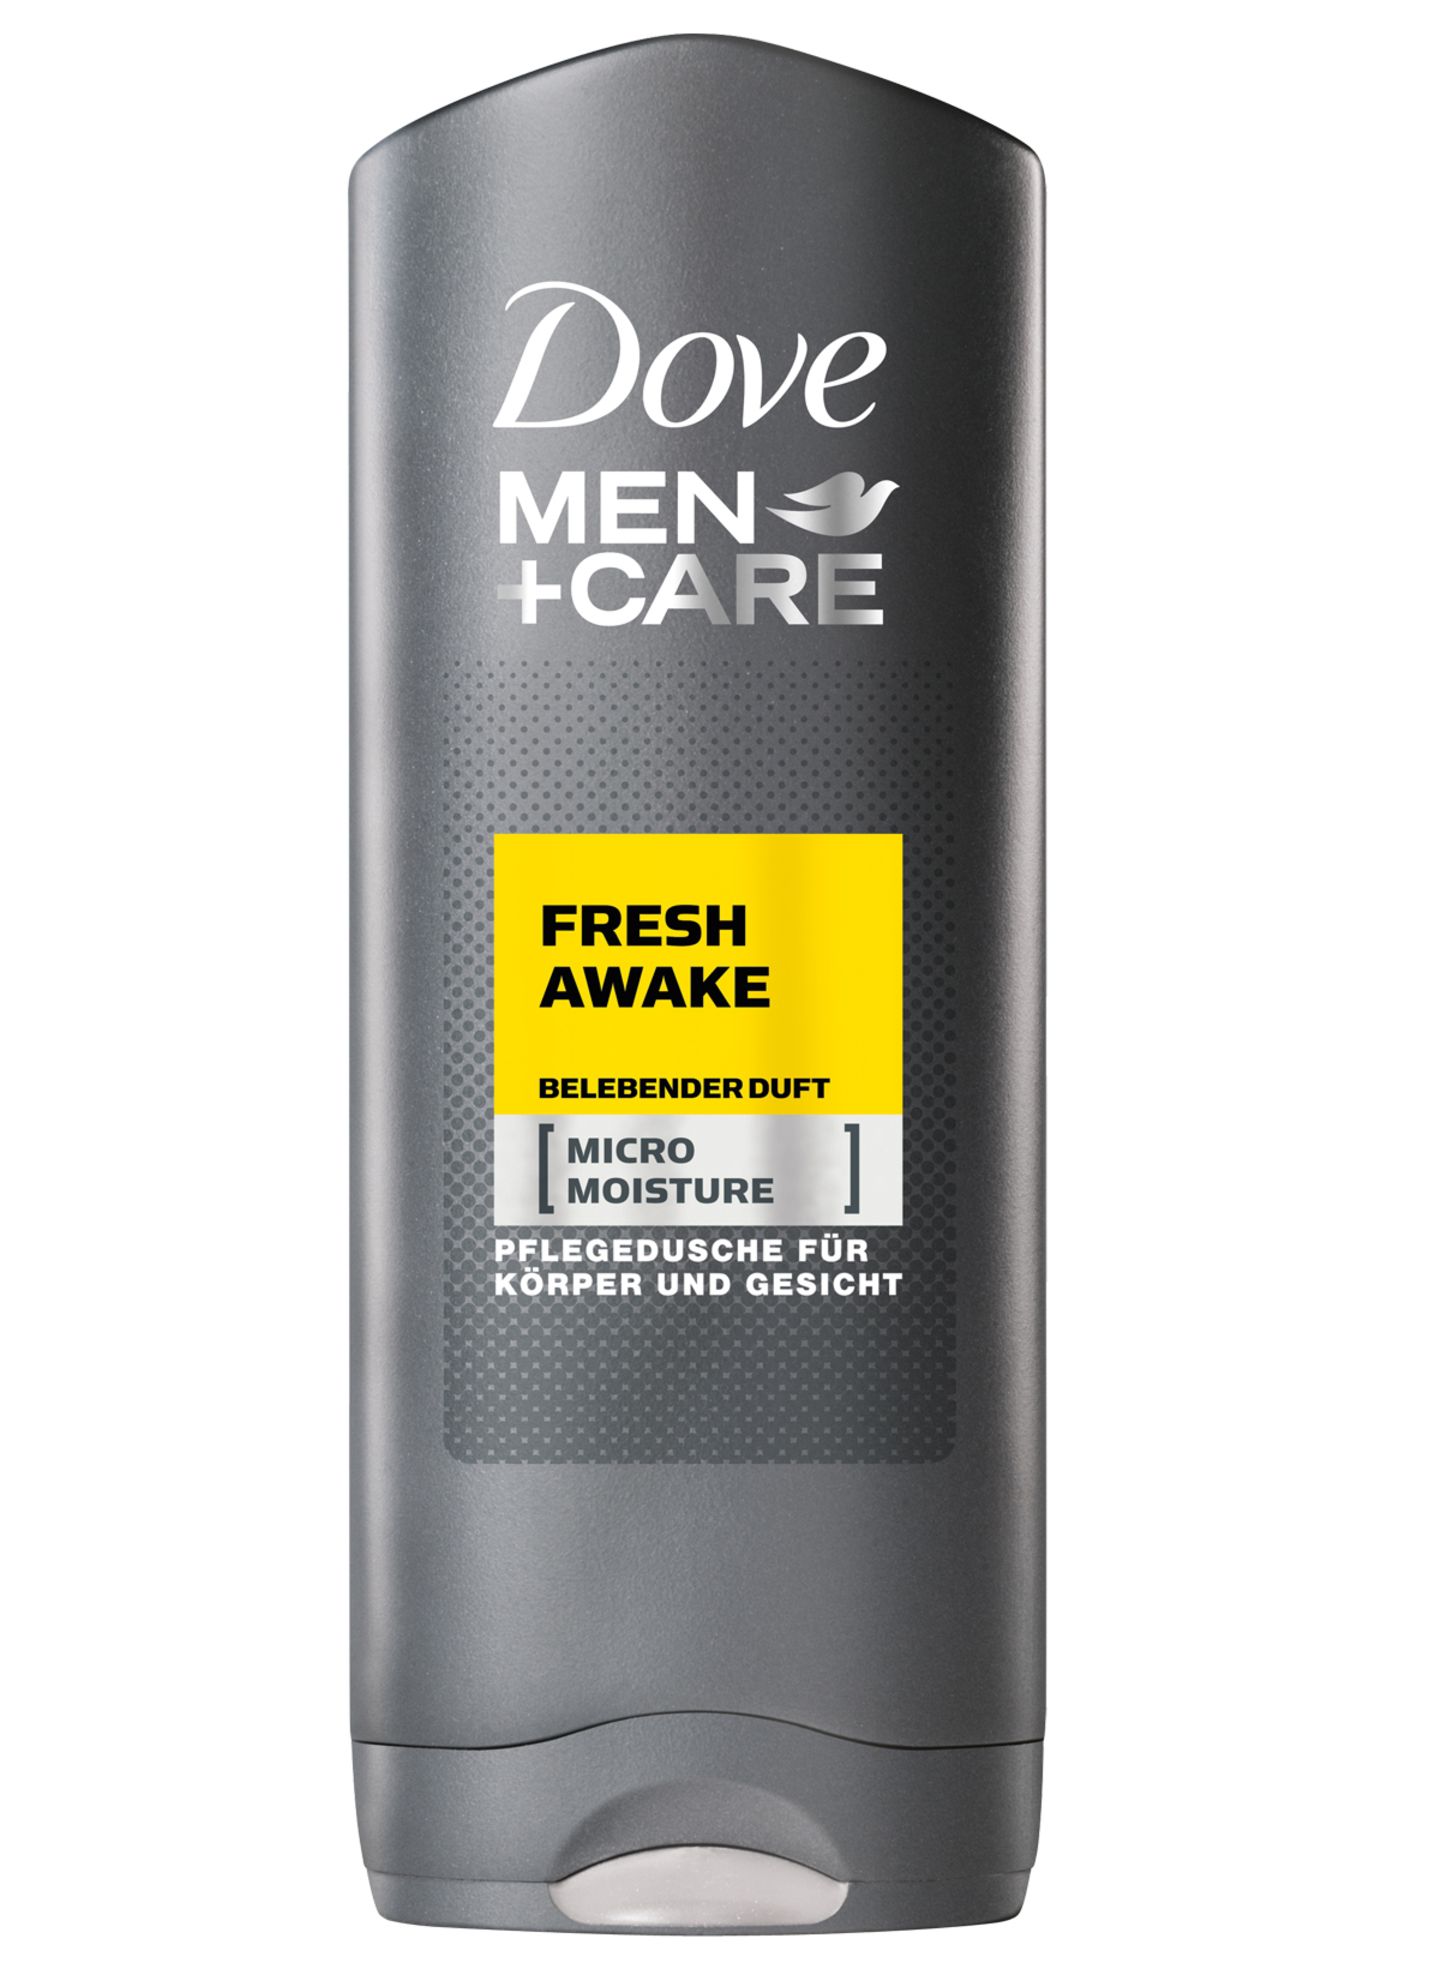 Frischekick am Morgen: die "Fresh Awake"-Pflegedusche mit Zitrusduft. Von Dove Men + Care, 250 ml, ca. 2 Euro